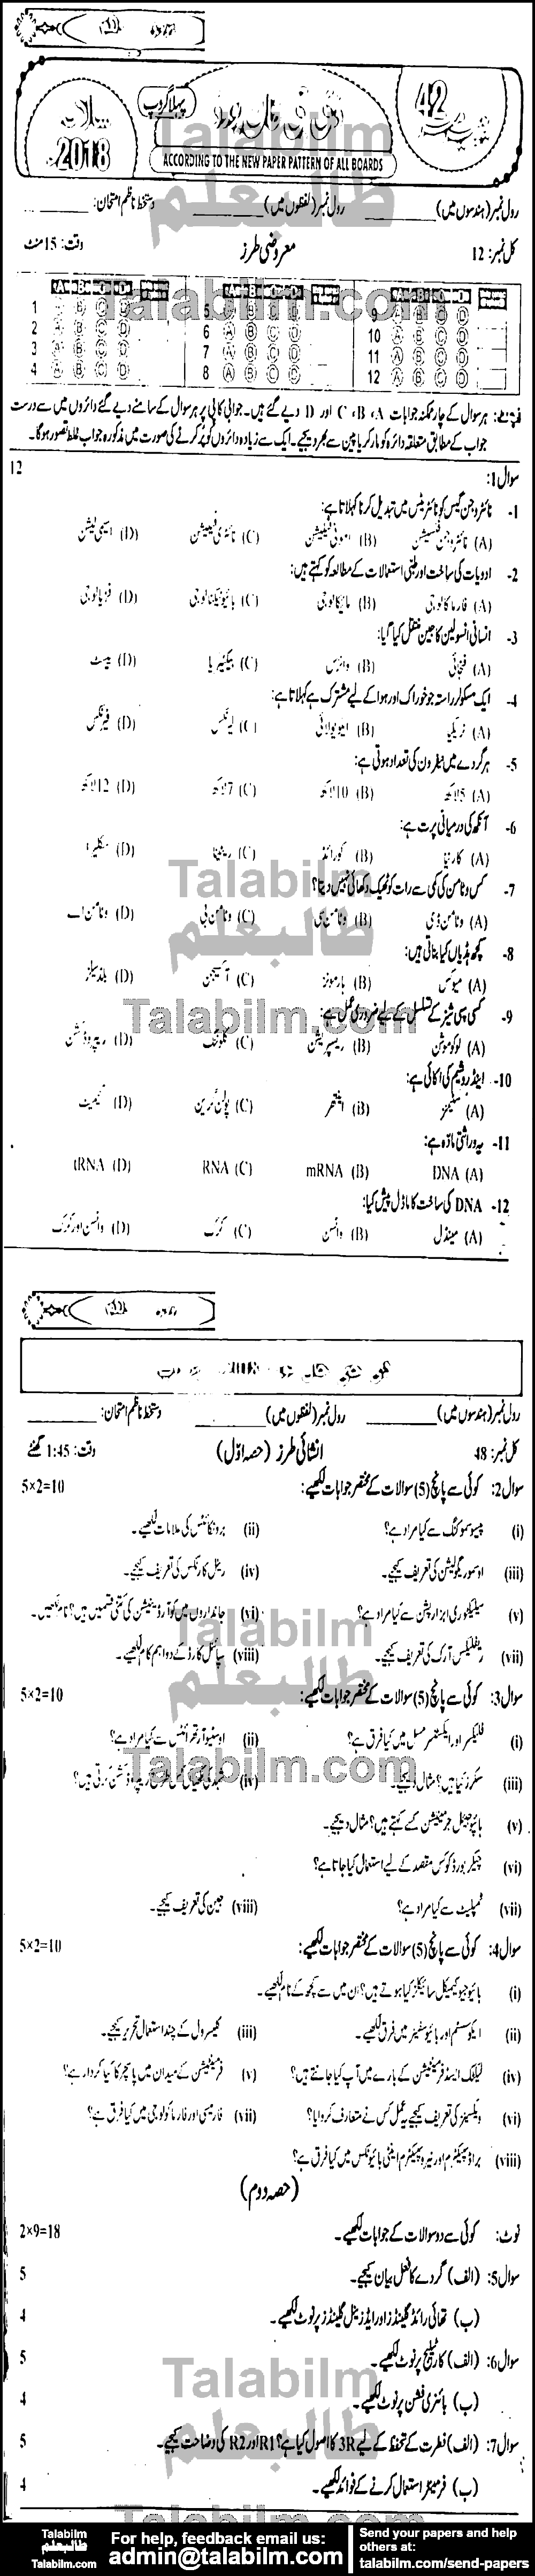 Biology 0 past paper for Urdu Medium 2018 Group-I